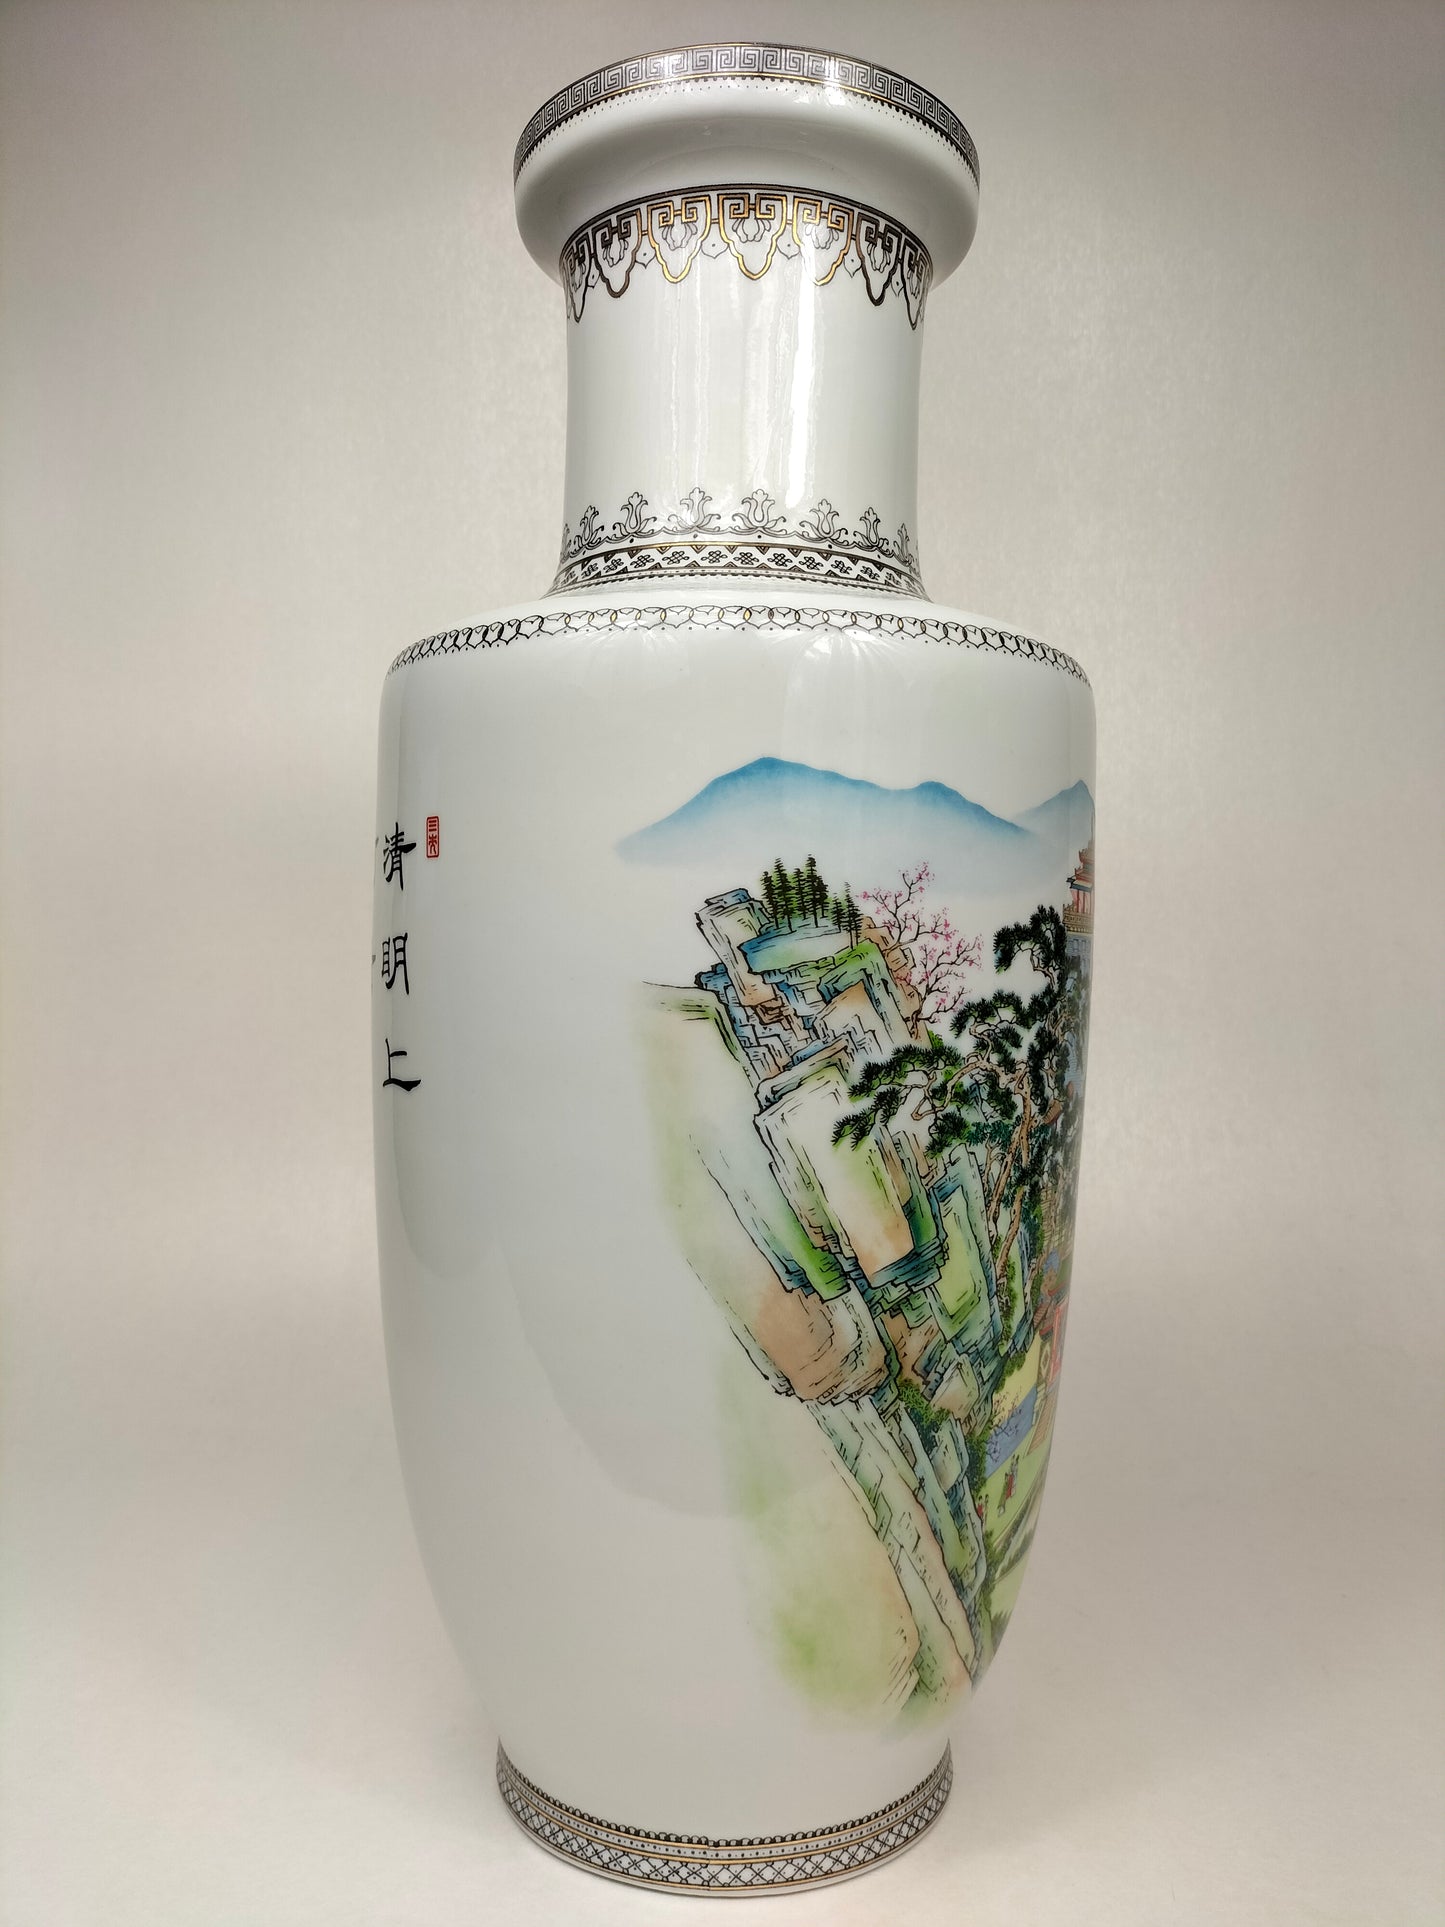 مزهرية رولو صينية مزينة بمناظر طبيعية // القرن العشرين